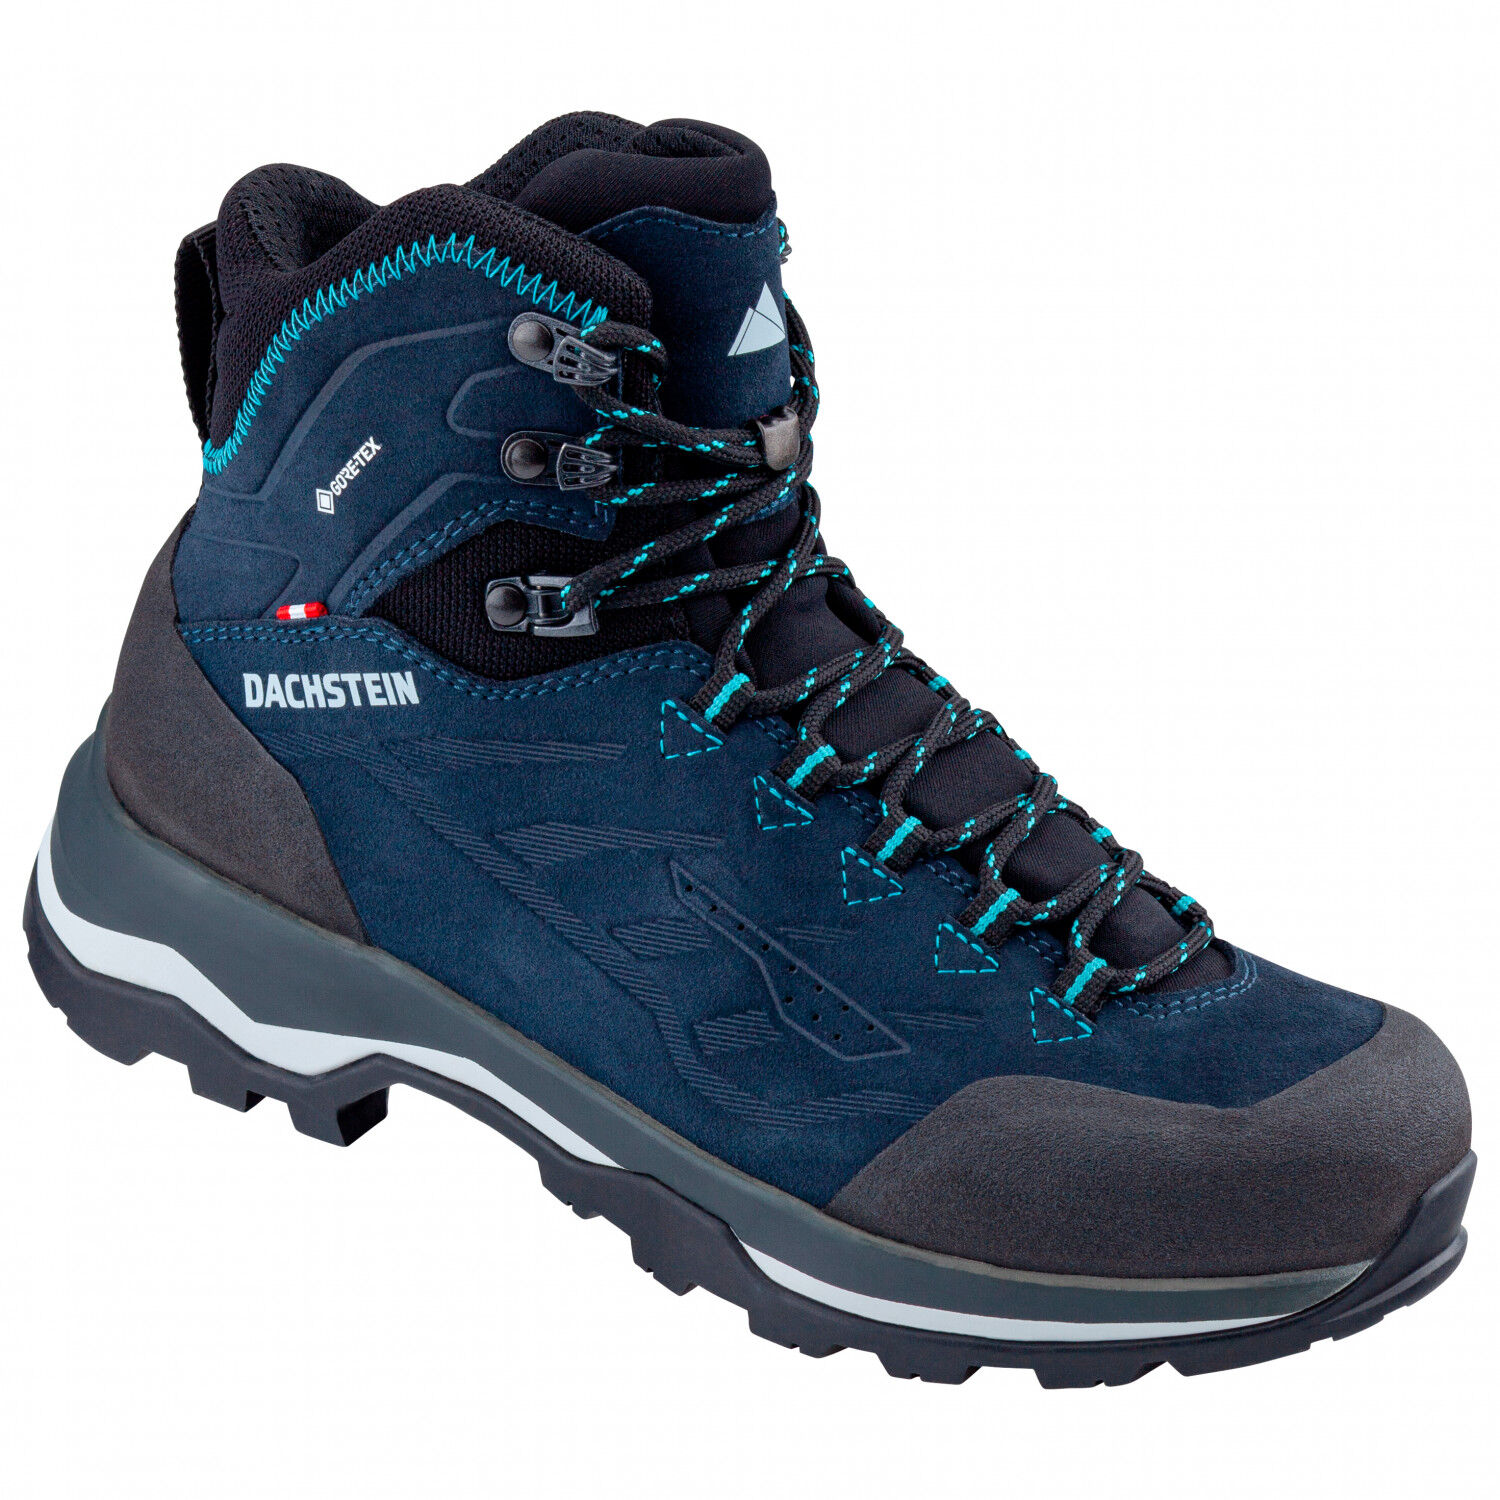 Dachstein Sarstein GTX - Hiking boots - Women's